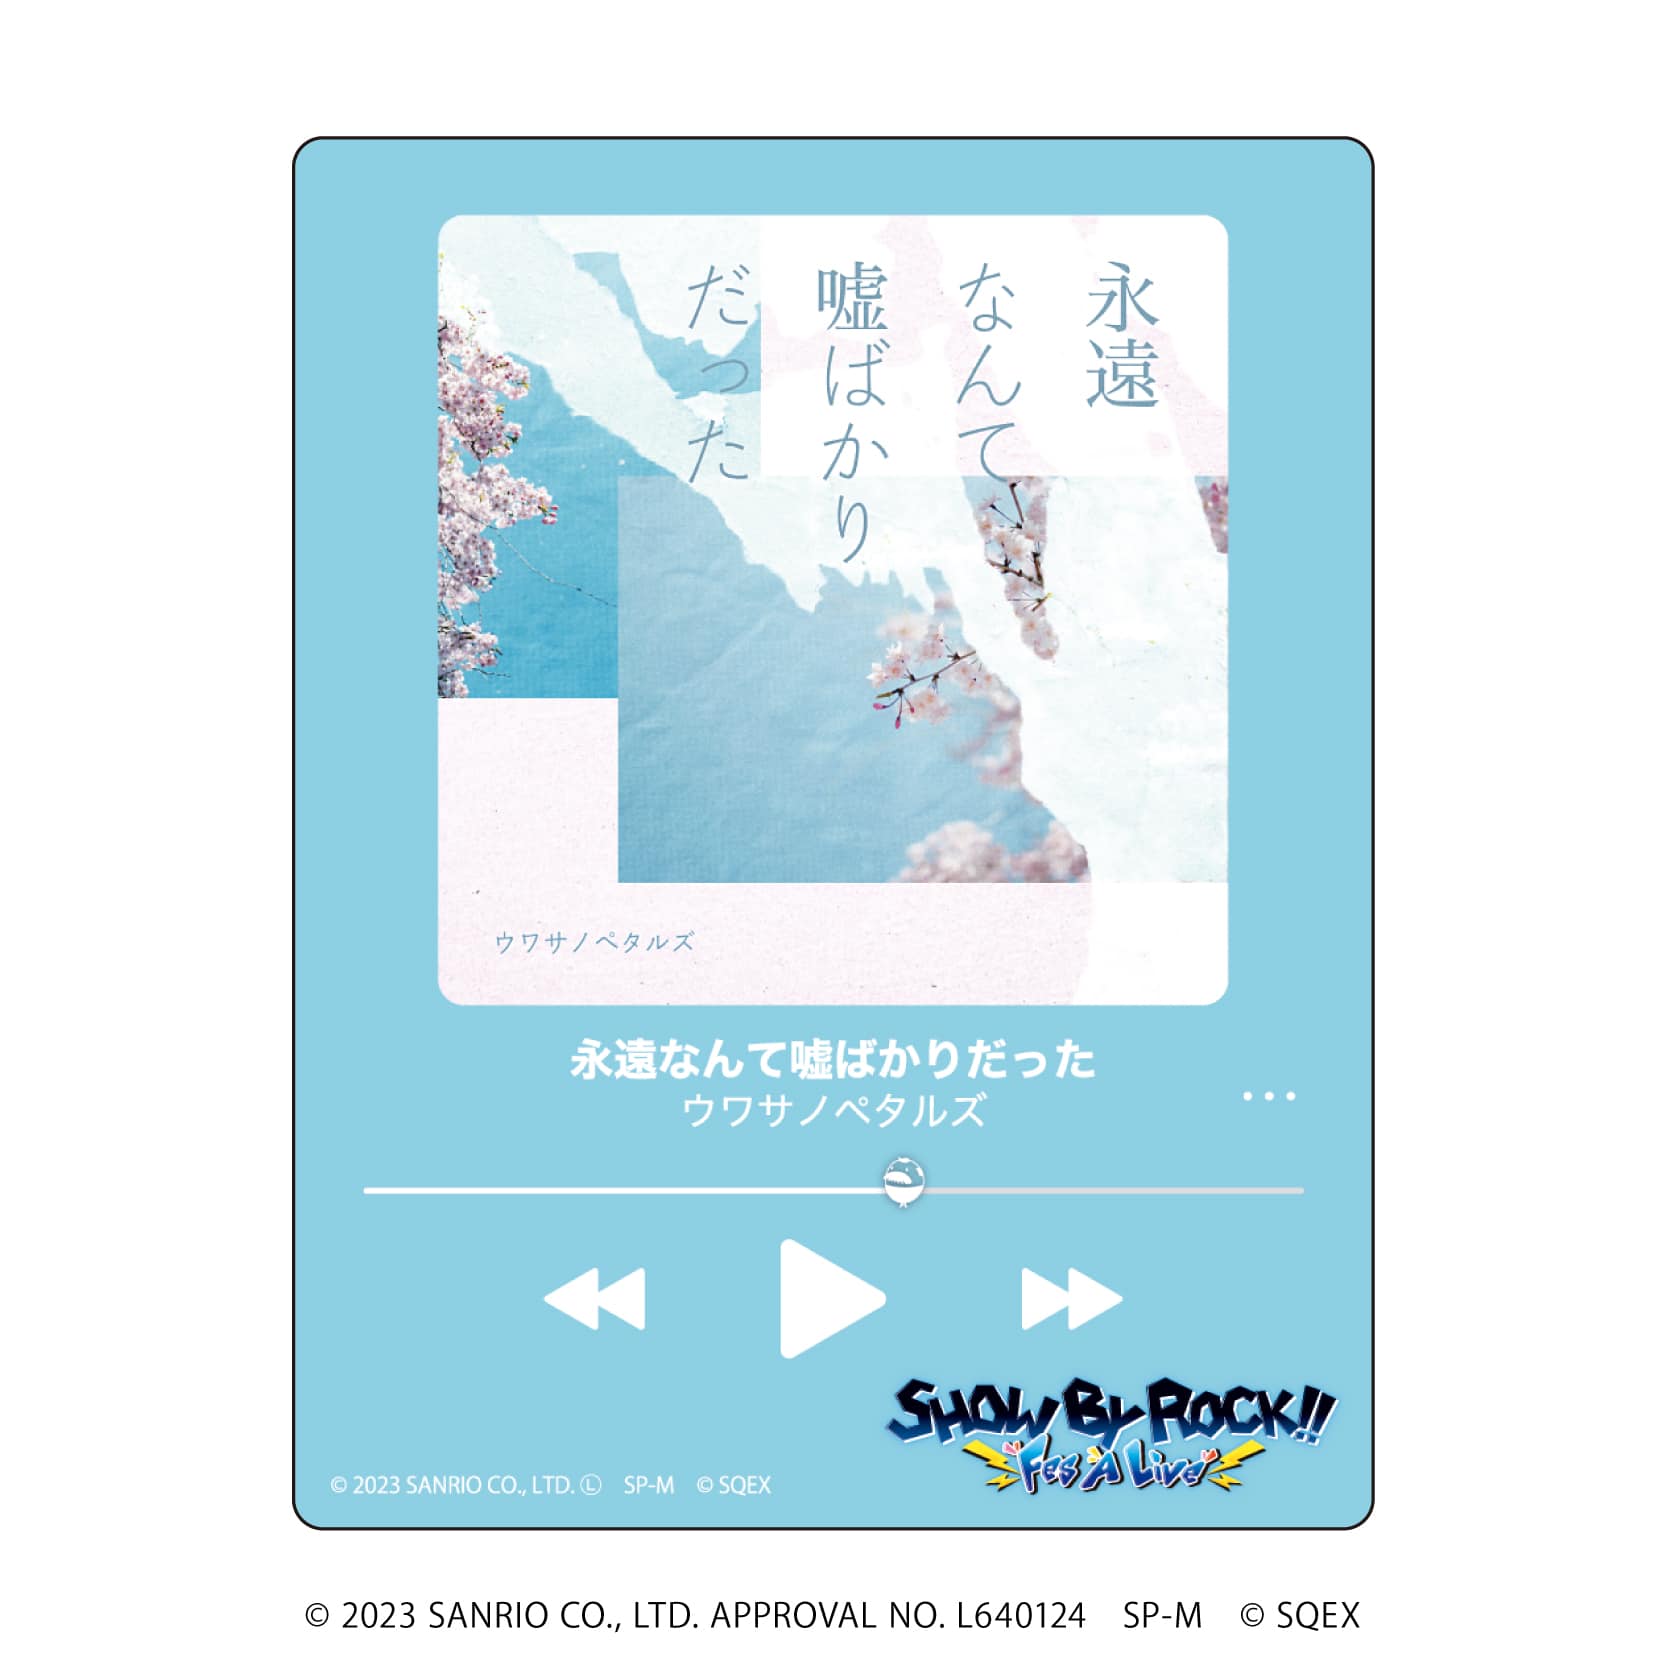 アクリルカード「SHOW BY ROCK!!」32/CDジャケットデザイン コンプリートBOX(全6種)